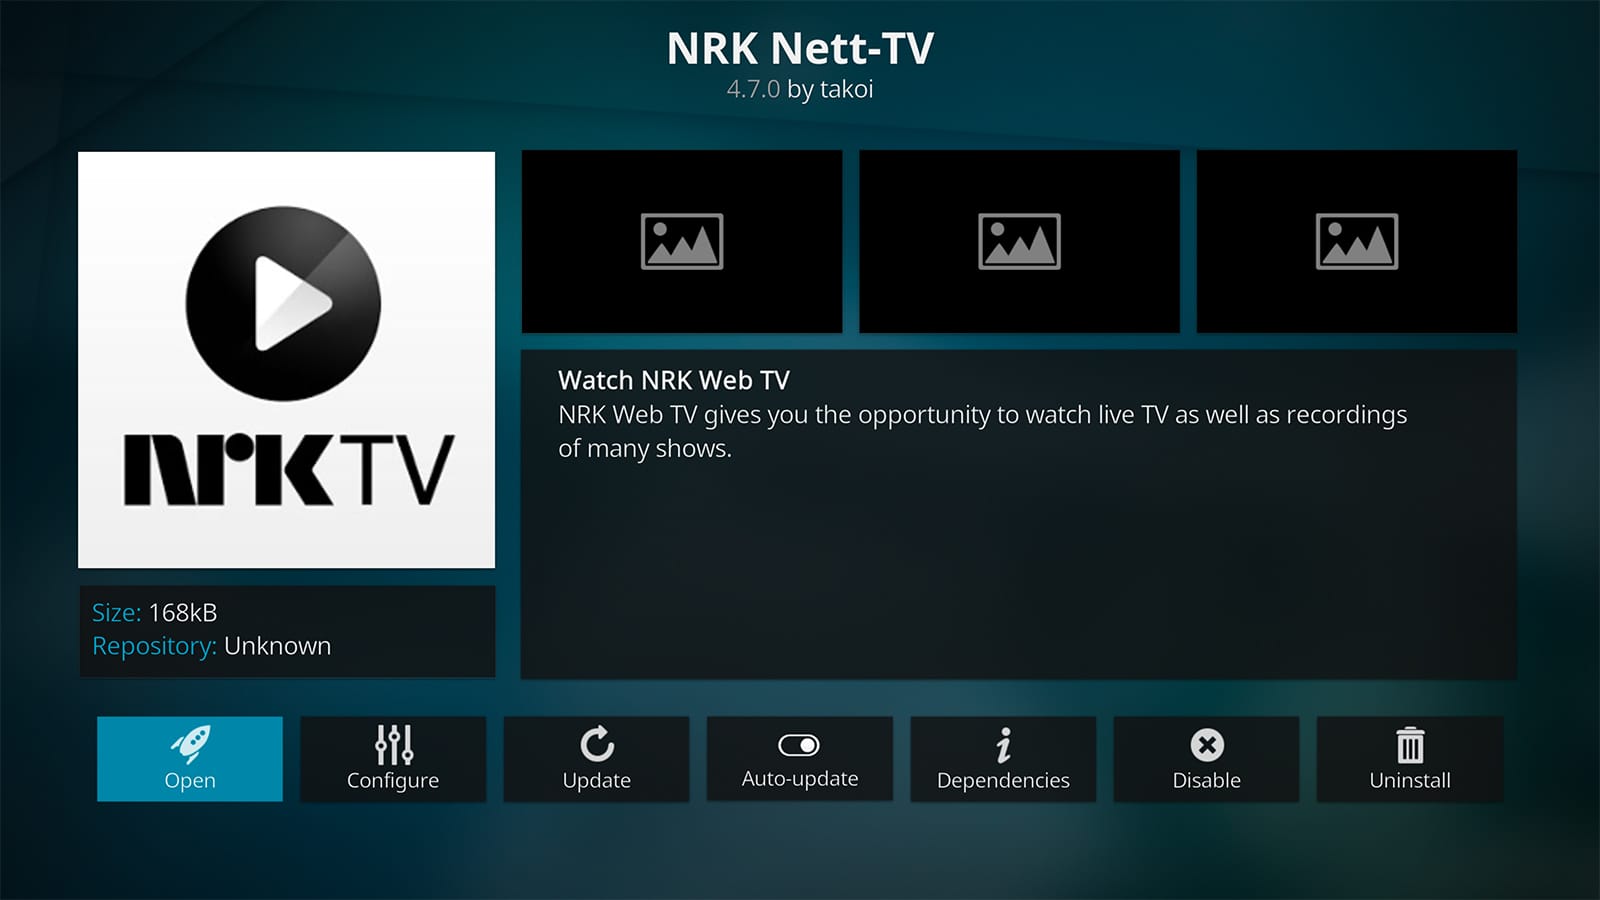 NRK Nett-TV Kodi Addon How To Install It on Kodi